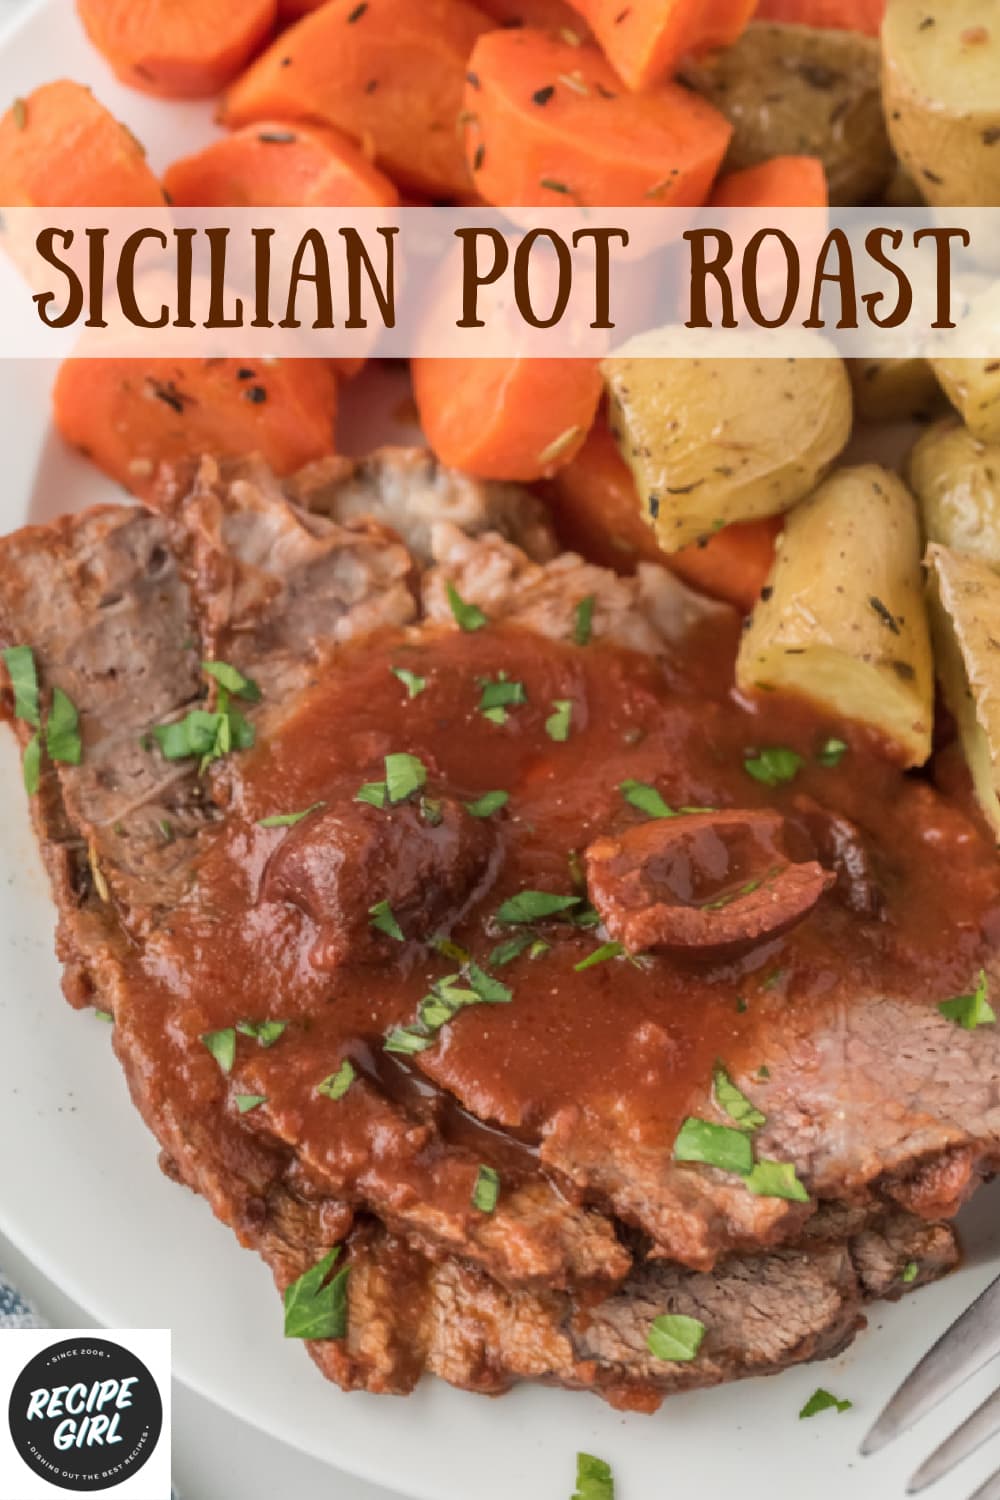 Sicilian Pot Roast - Recipe Girl®